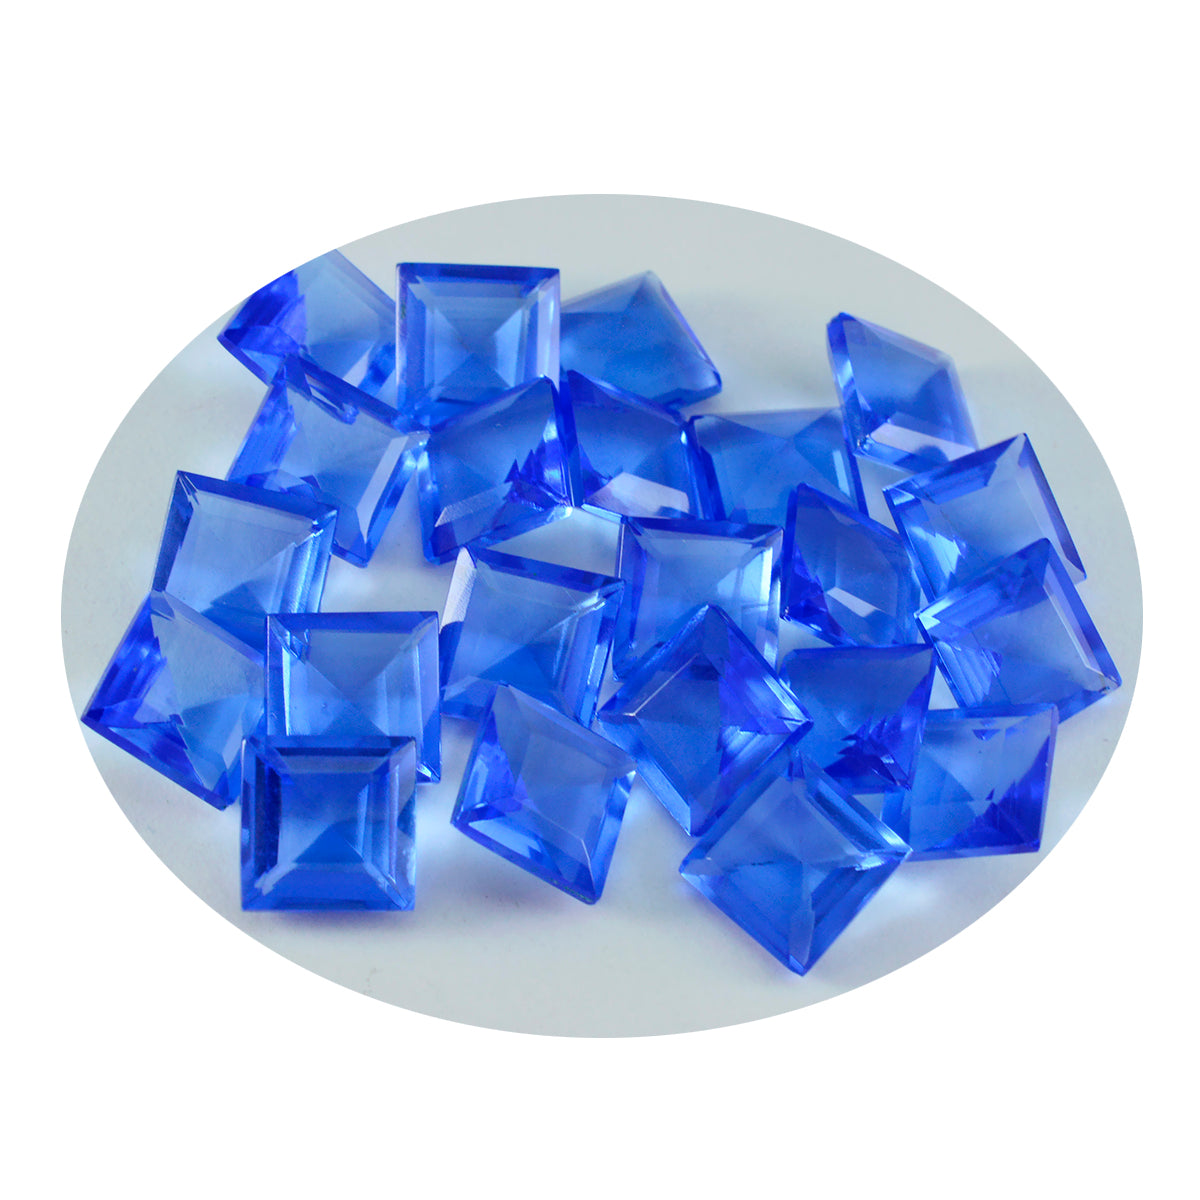 riyogems 1 шт. синий сапфир cz ограненный 10x10 мм квадратной формы красивый качественный свободный драгоценный камень